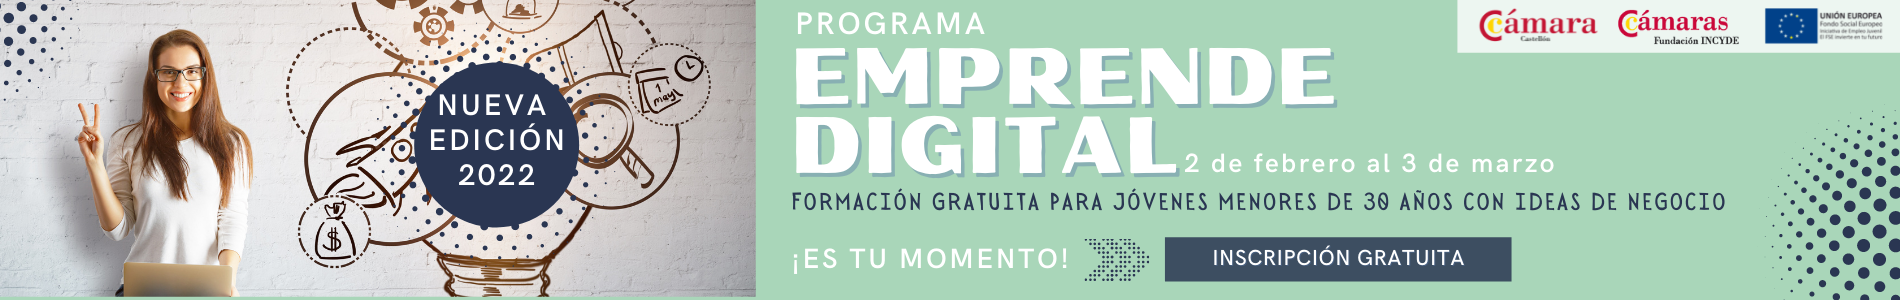 Programa Emprende Digital. Edición II